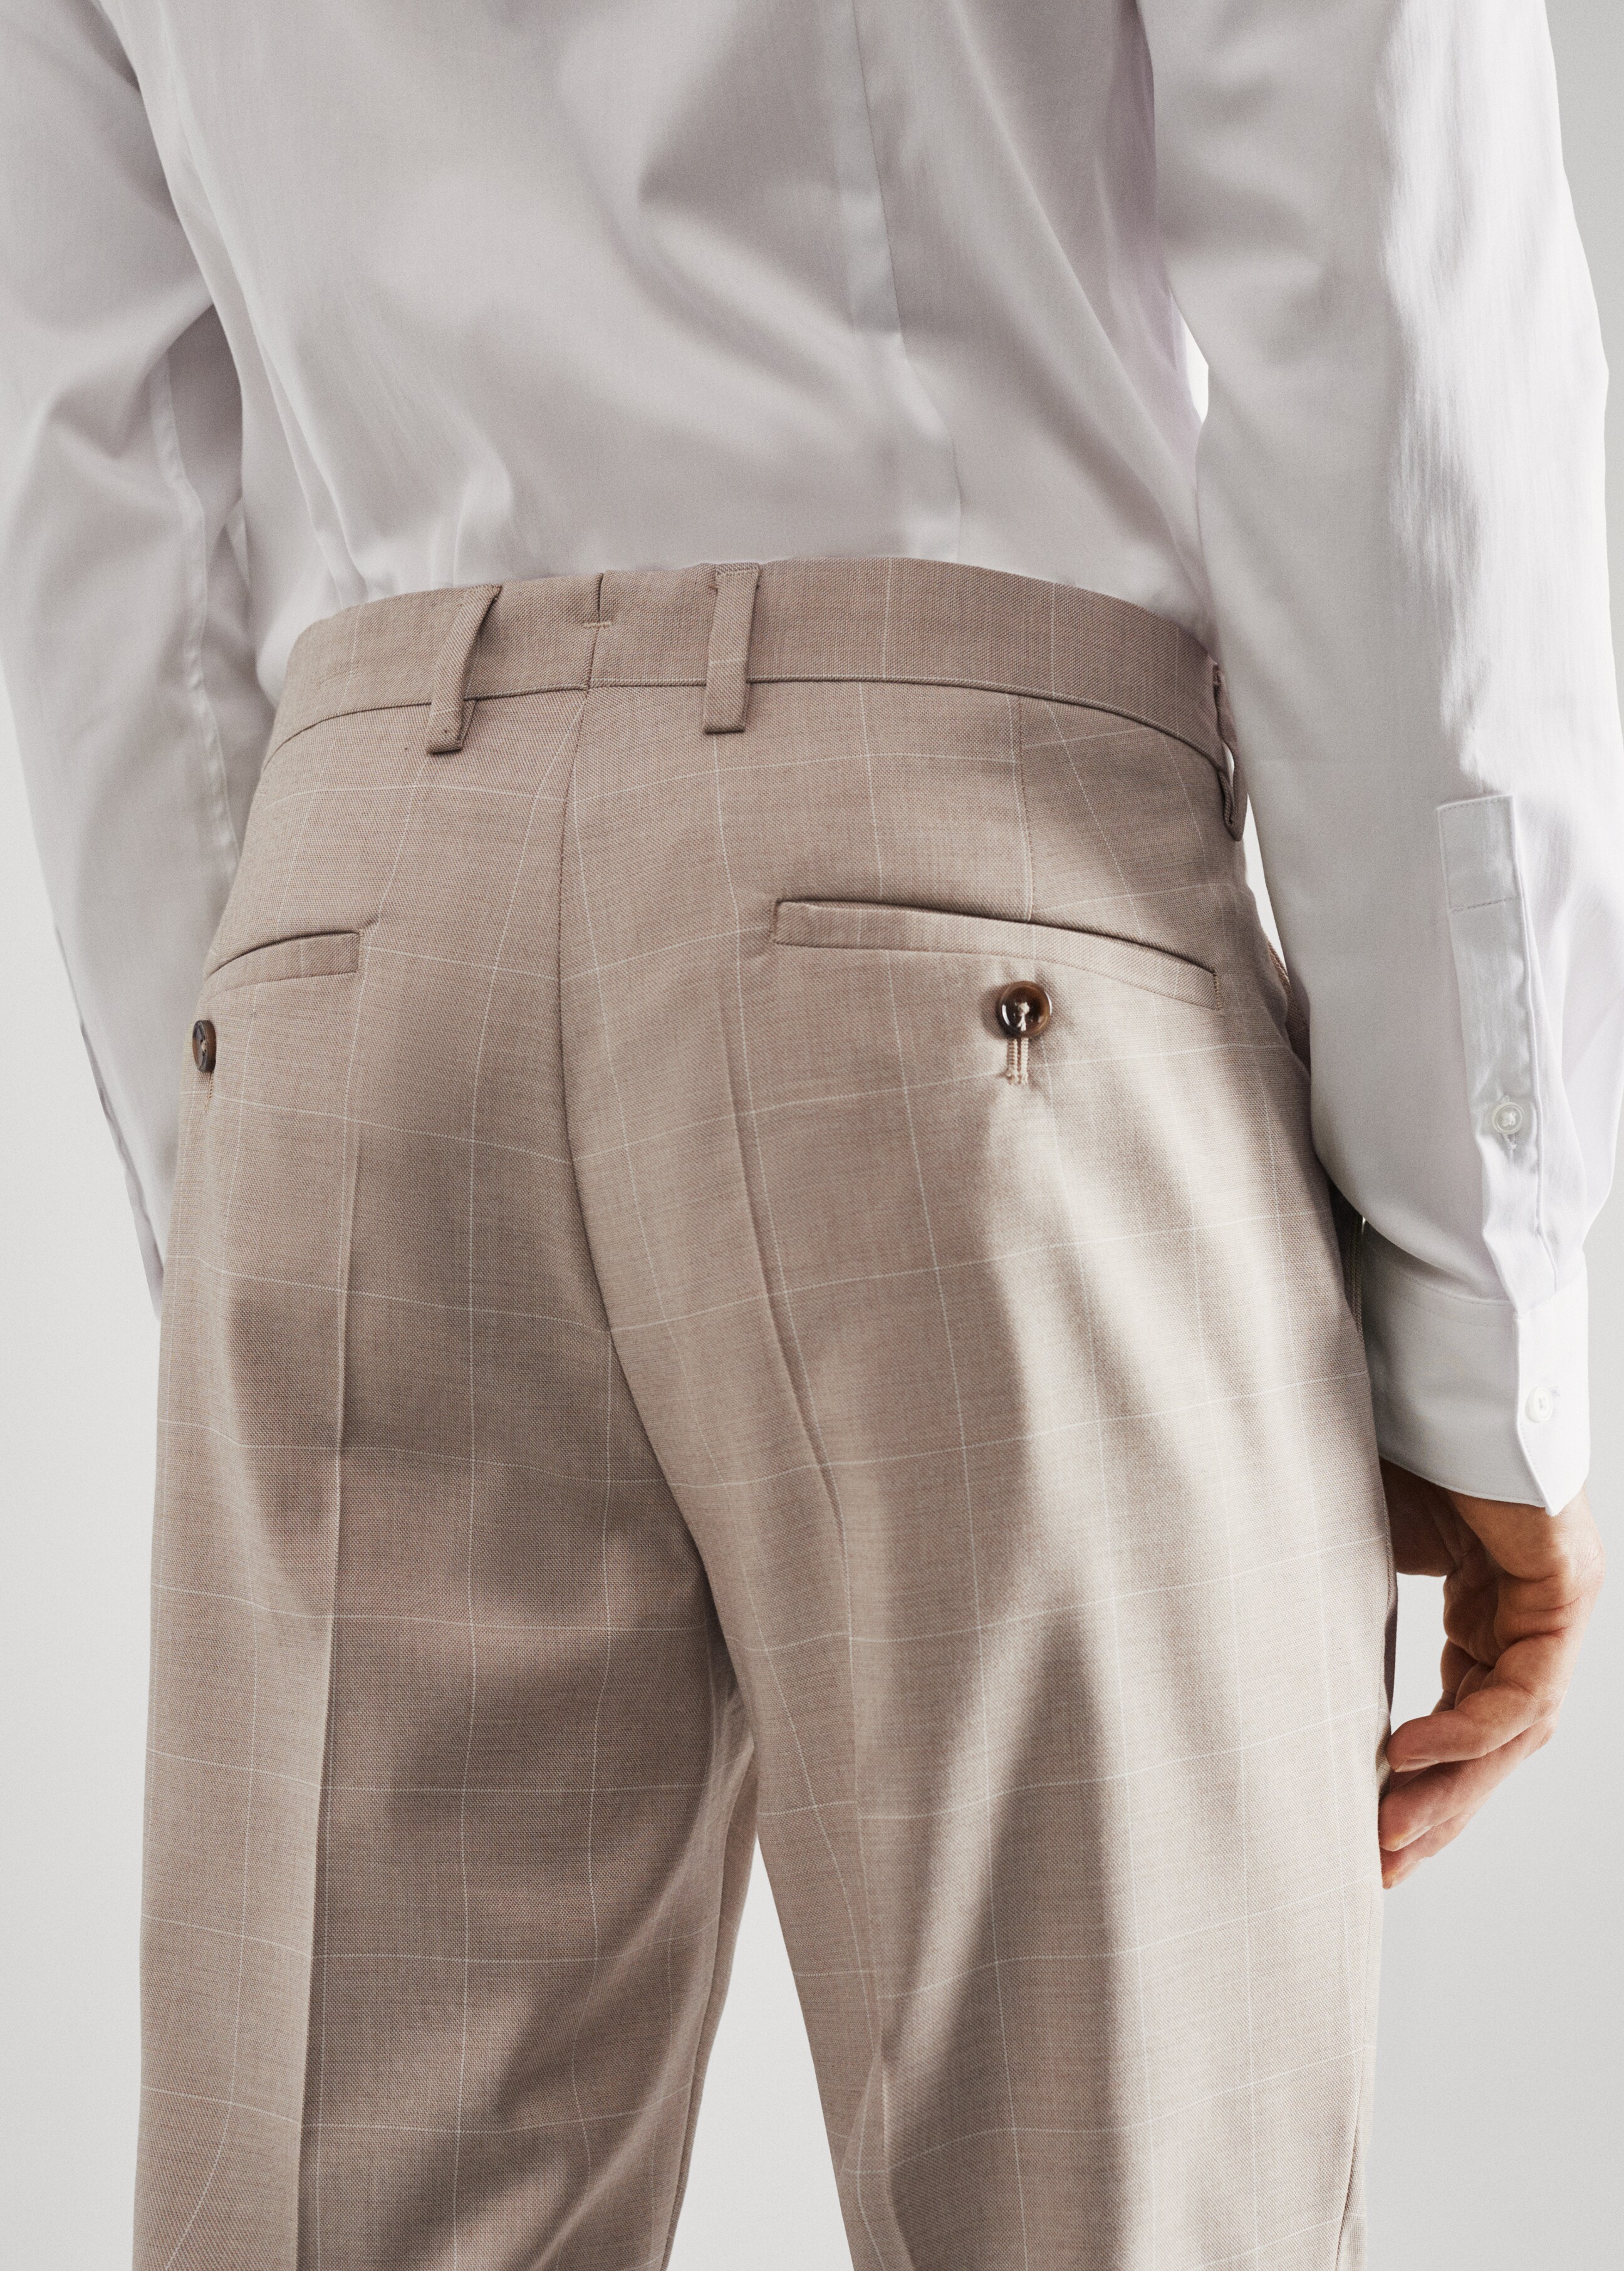 Pantalón traje super slim fit cuadros - Detalle del artículo 4